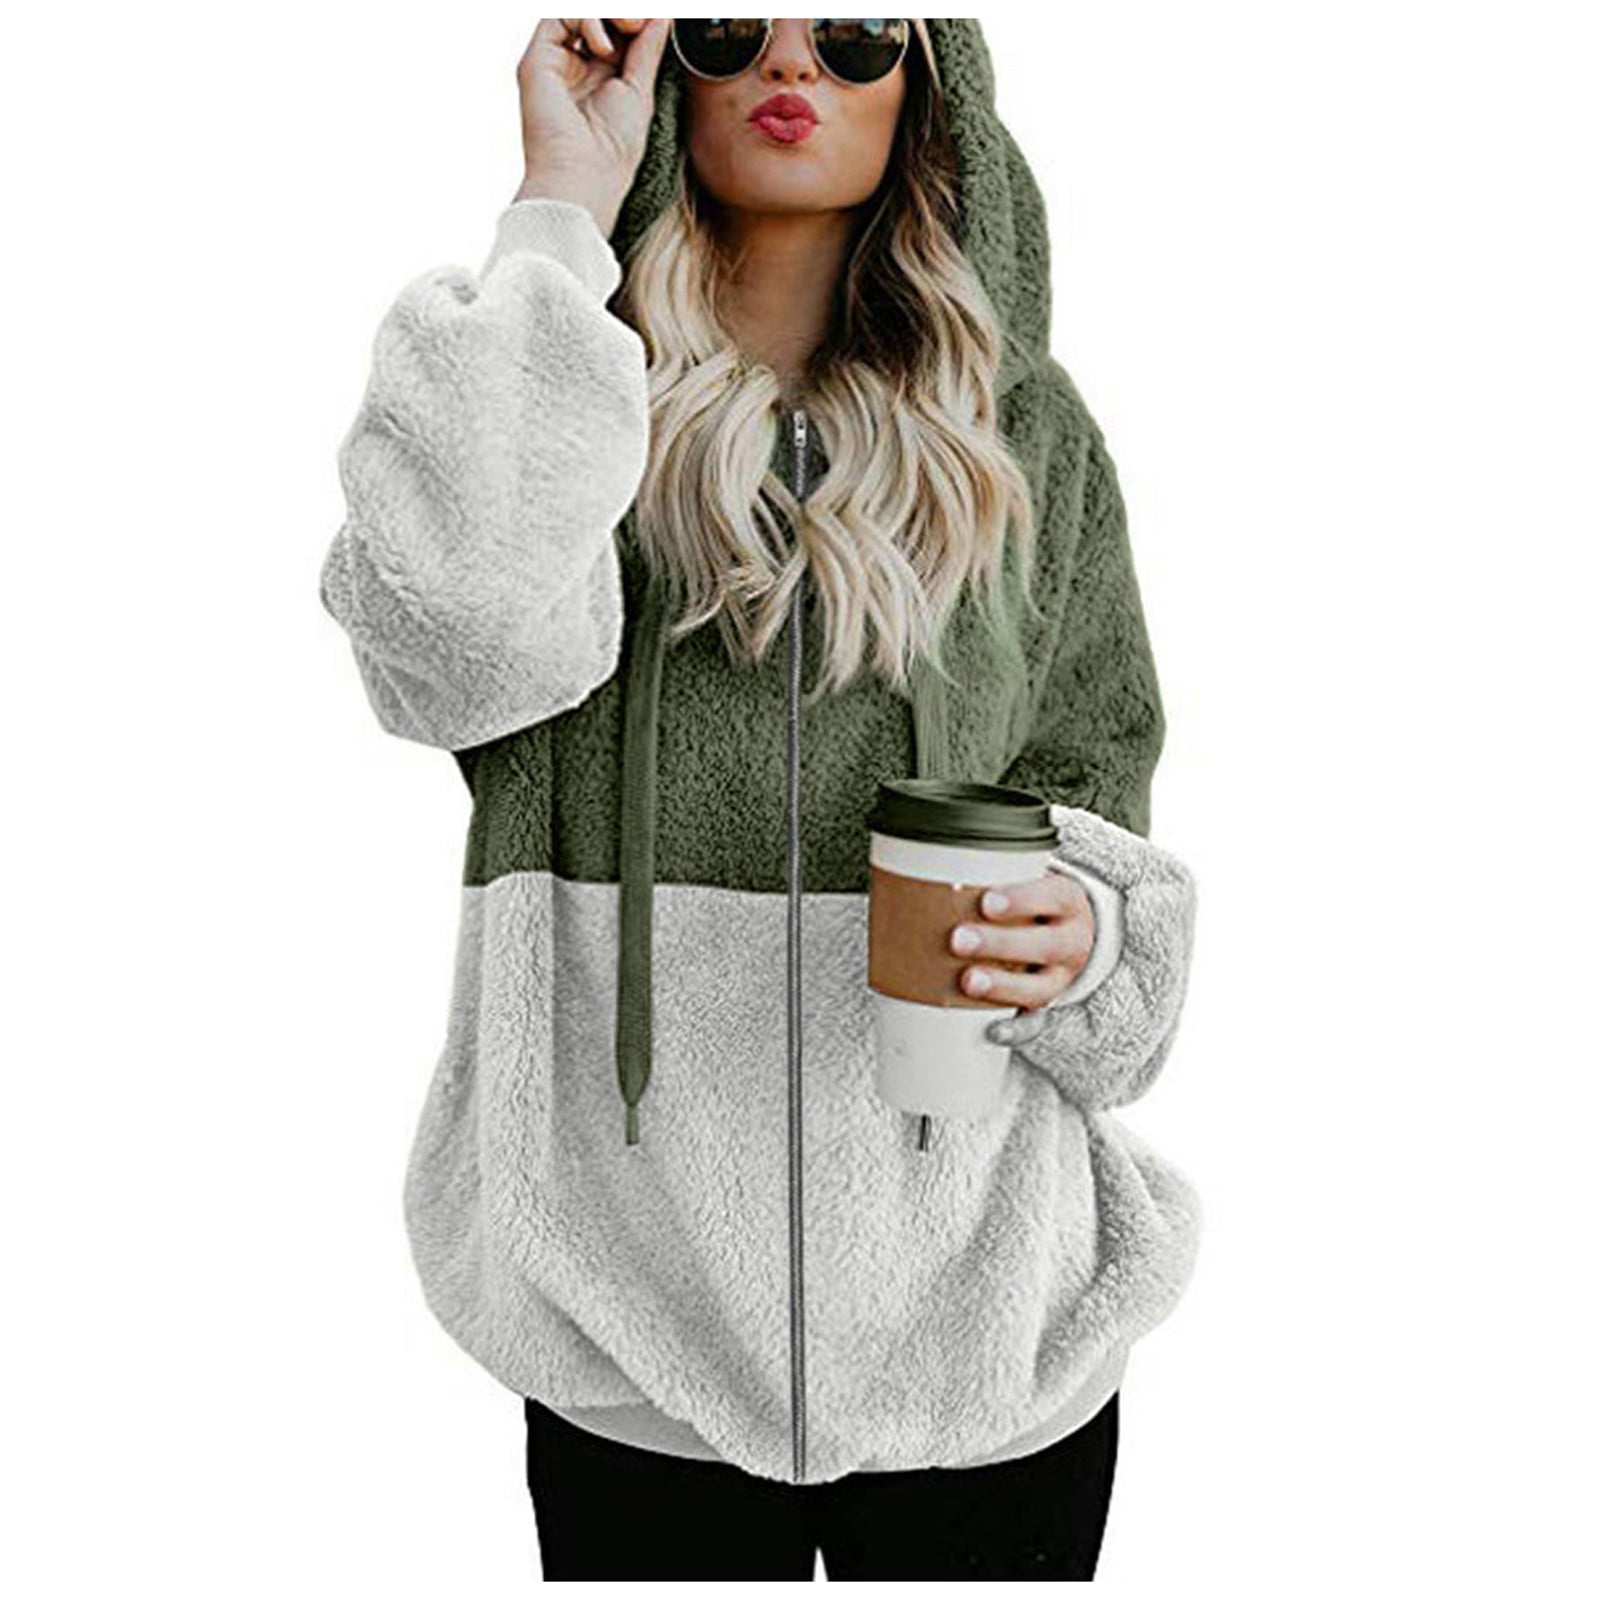 Women Hooded Sweatshirt Coat Winter Warm Wool Zipper Pockets Cotton Coat Outwear